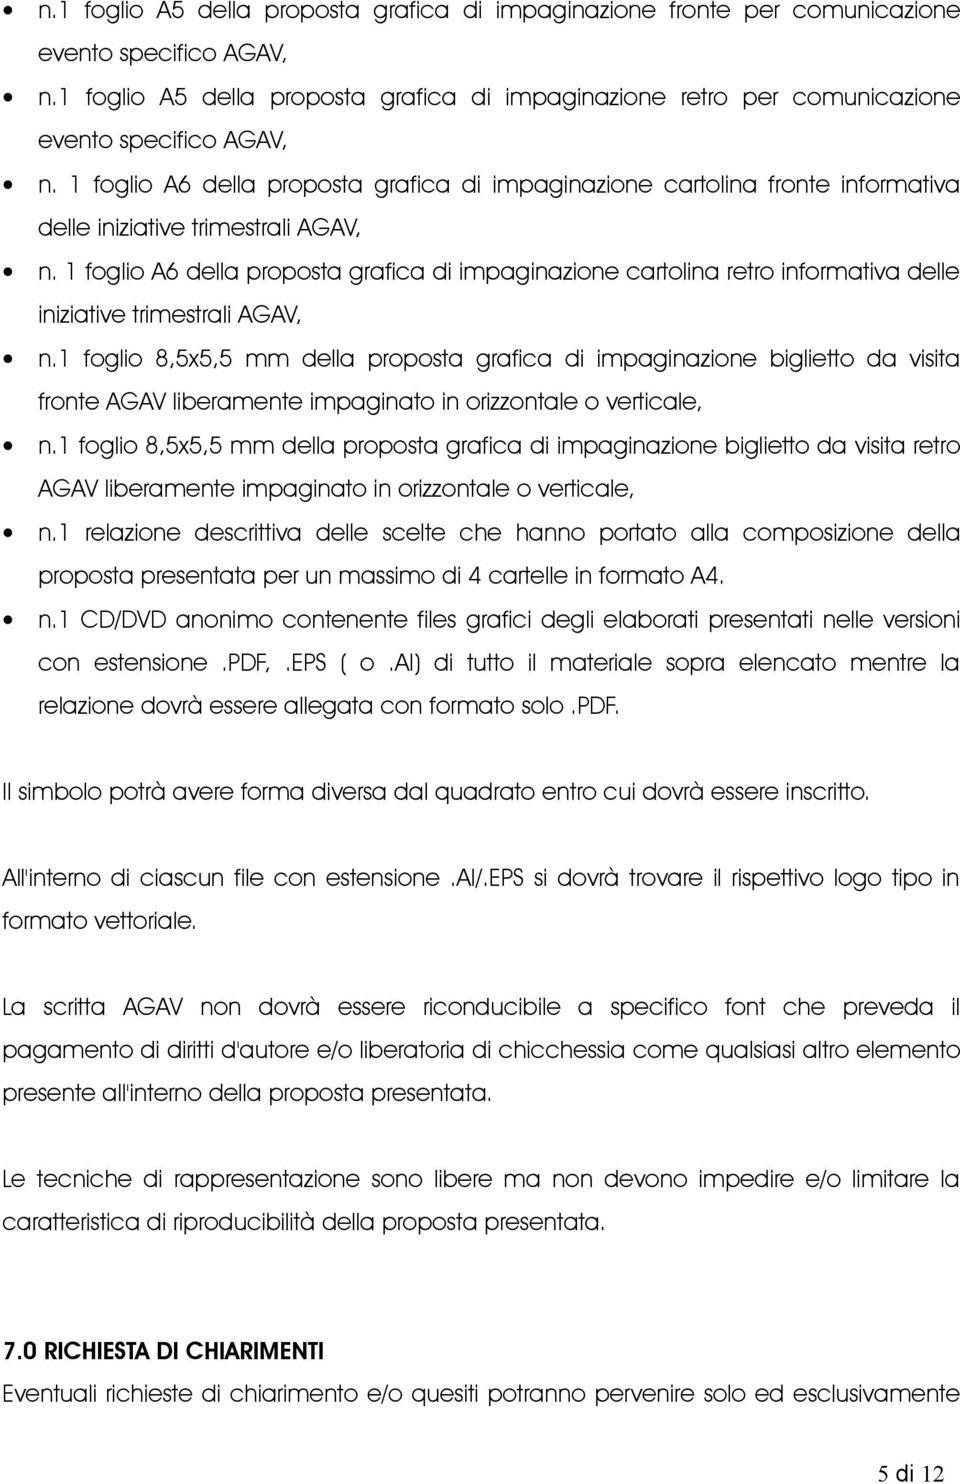 1 foglio A6 della proposta grafica di impaginazione cartolina fronte informativa delle iniziative trimestrali AGAV, n.